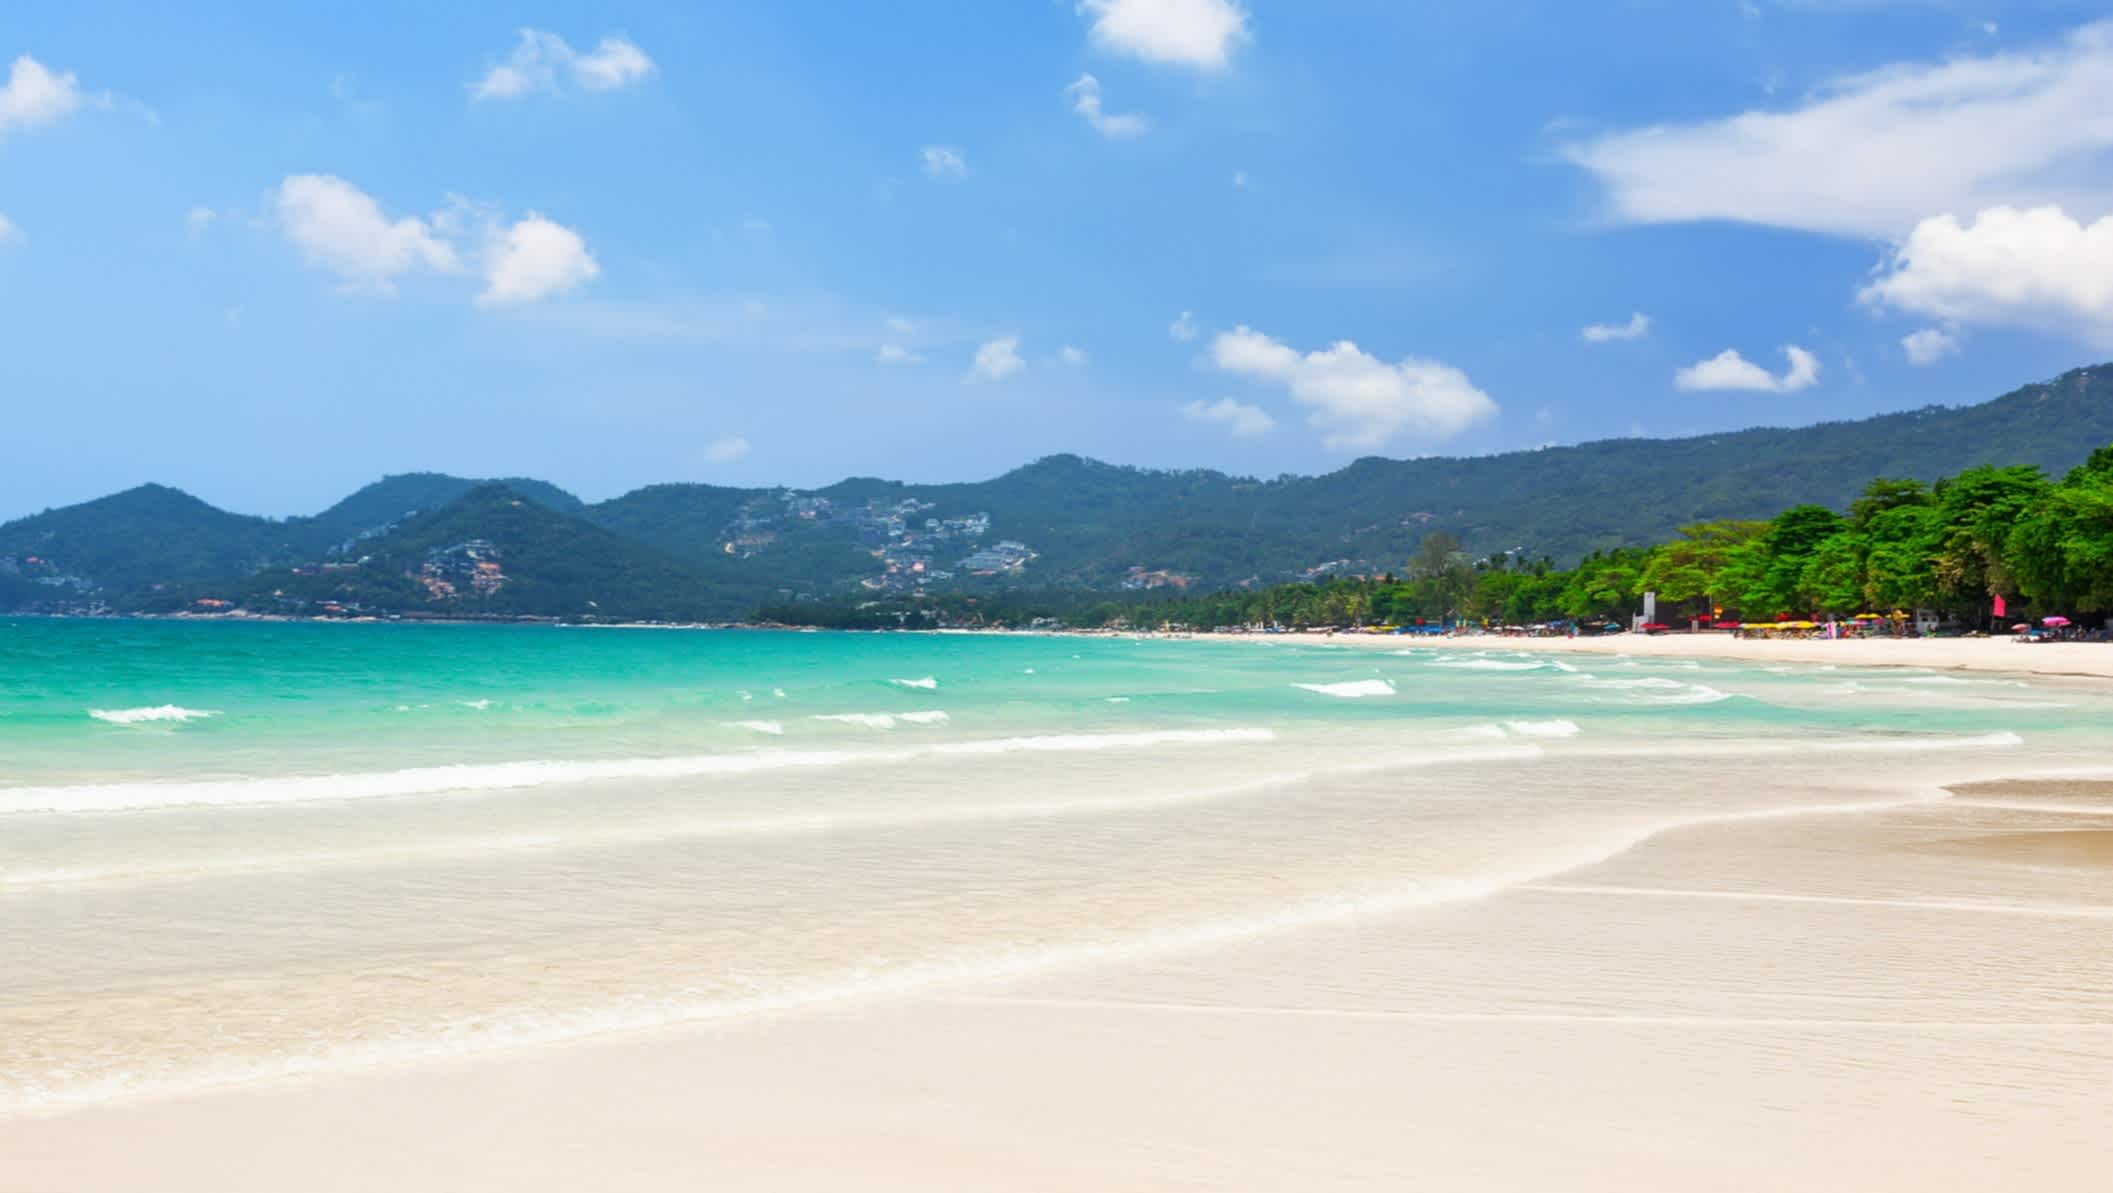 Vue sur la magnifique plage de sable blanc aux eaux turquoises de Chaweng Beach à Koh Samui, Thaïlande.